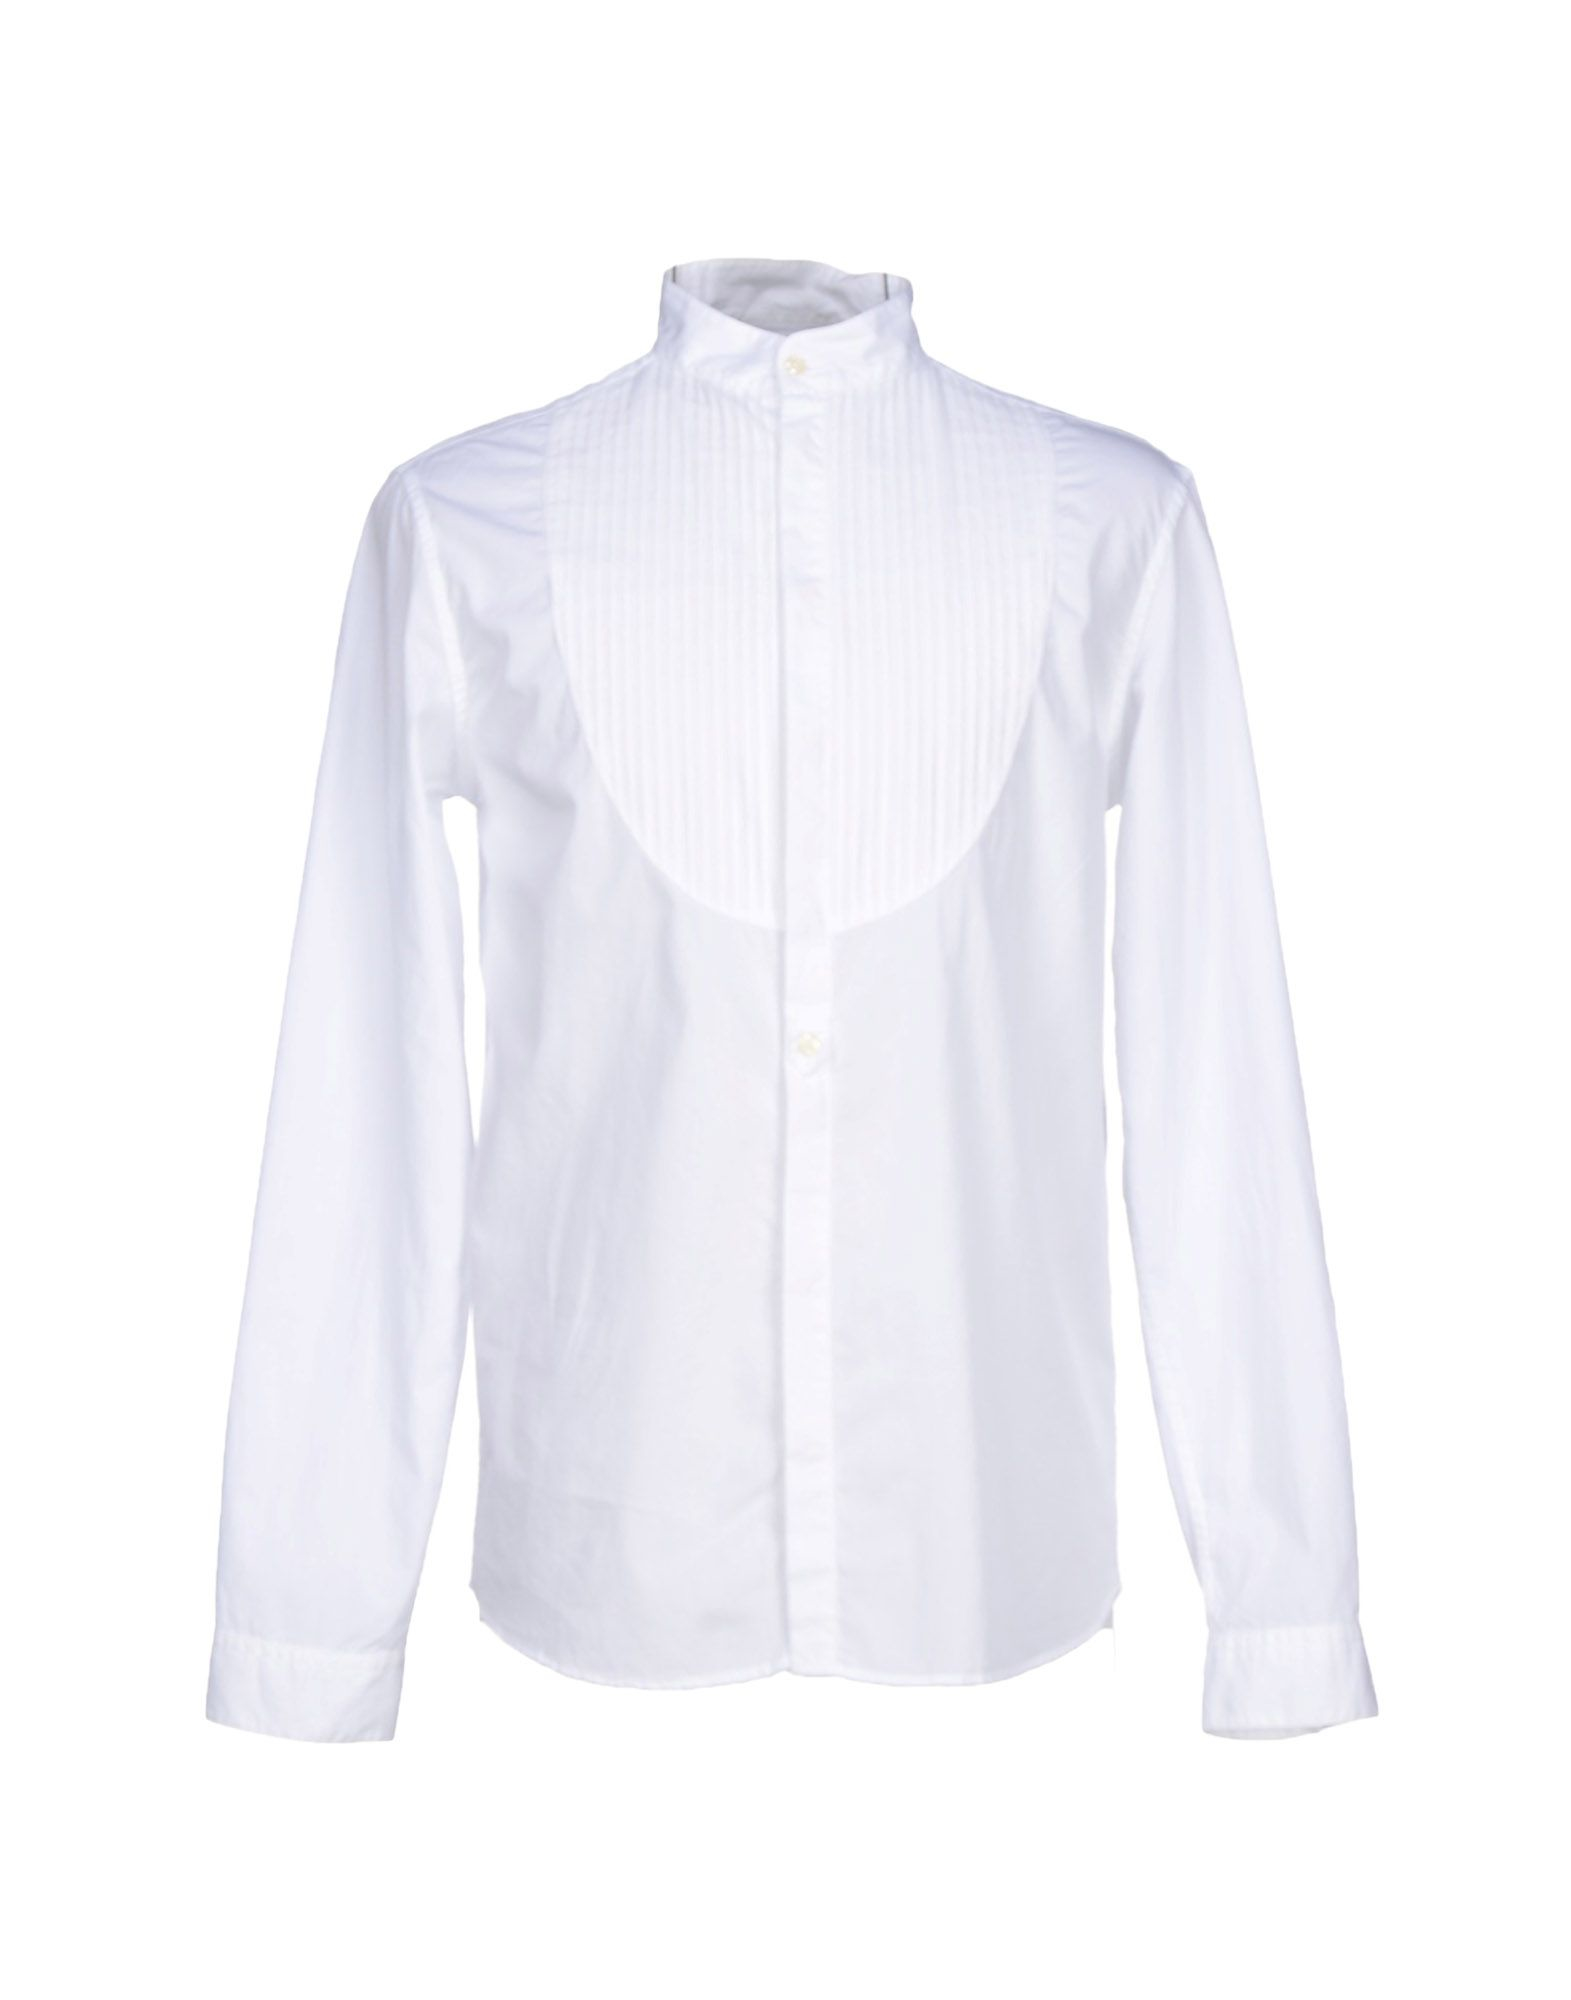 Lyst - Balmain Shirt in White for Men